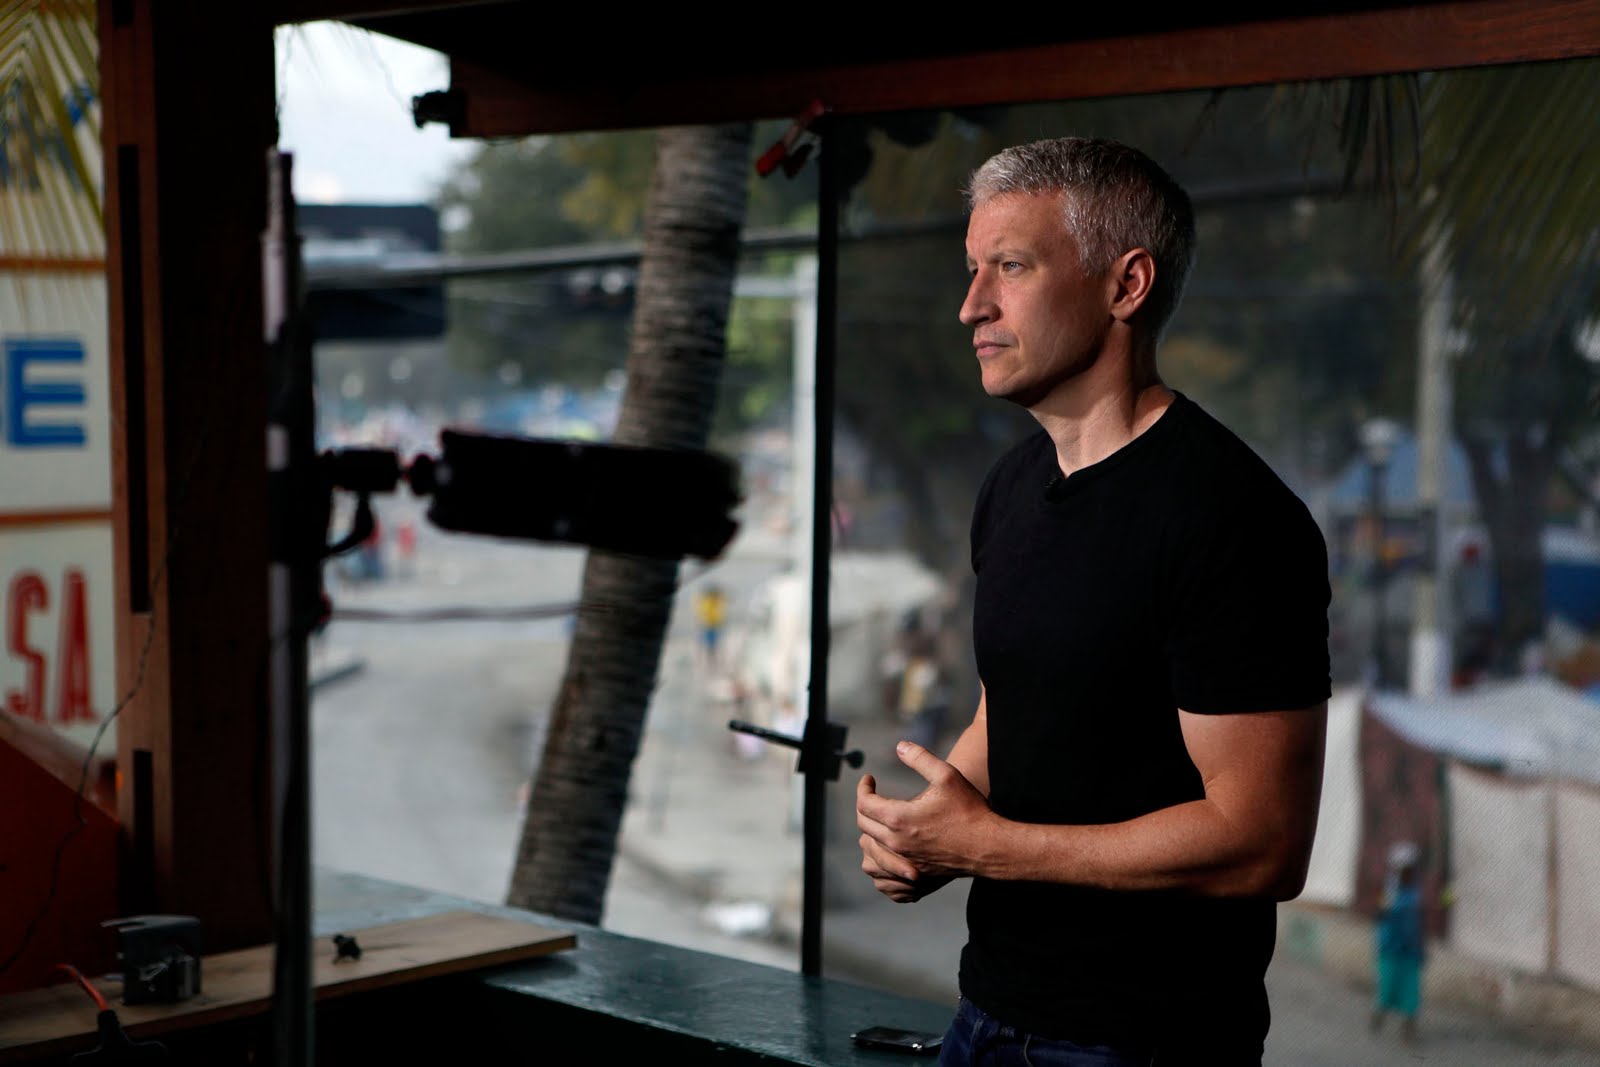 Jornalista gato e gay, Anderson Cooper faz 50 anos